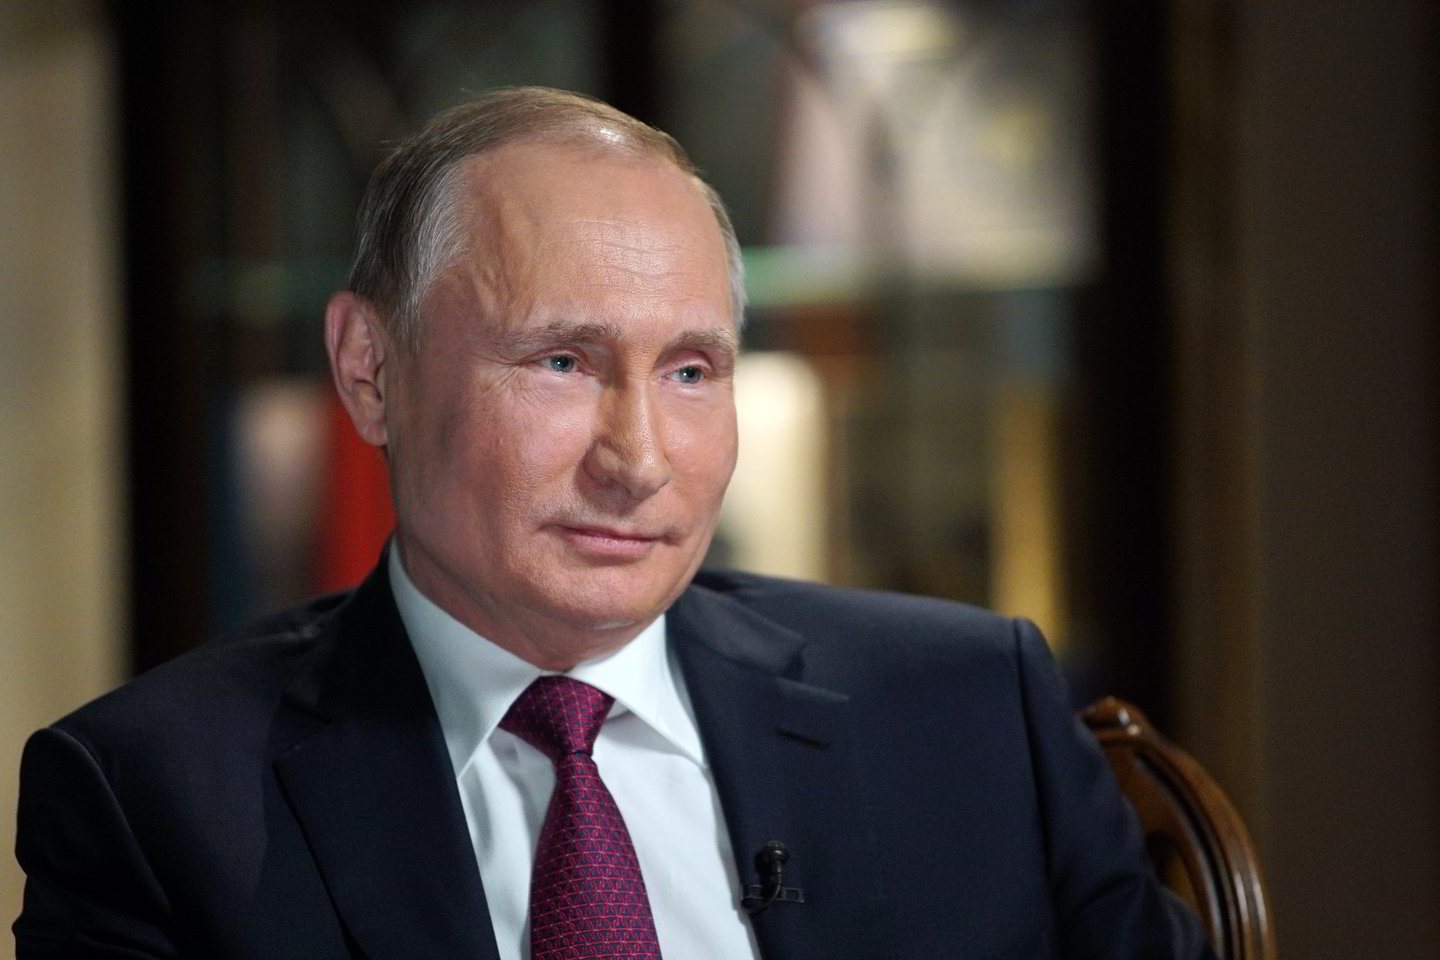  Apie praeitį V.Putinas prisipažino naujame dviejų valandų dokumentiniame filme, pasirodžiusiame prieš artėjančius rinkimus. <br>Sputnik/Scanpix nuotr.